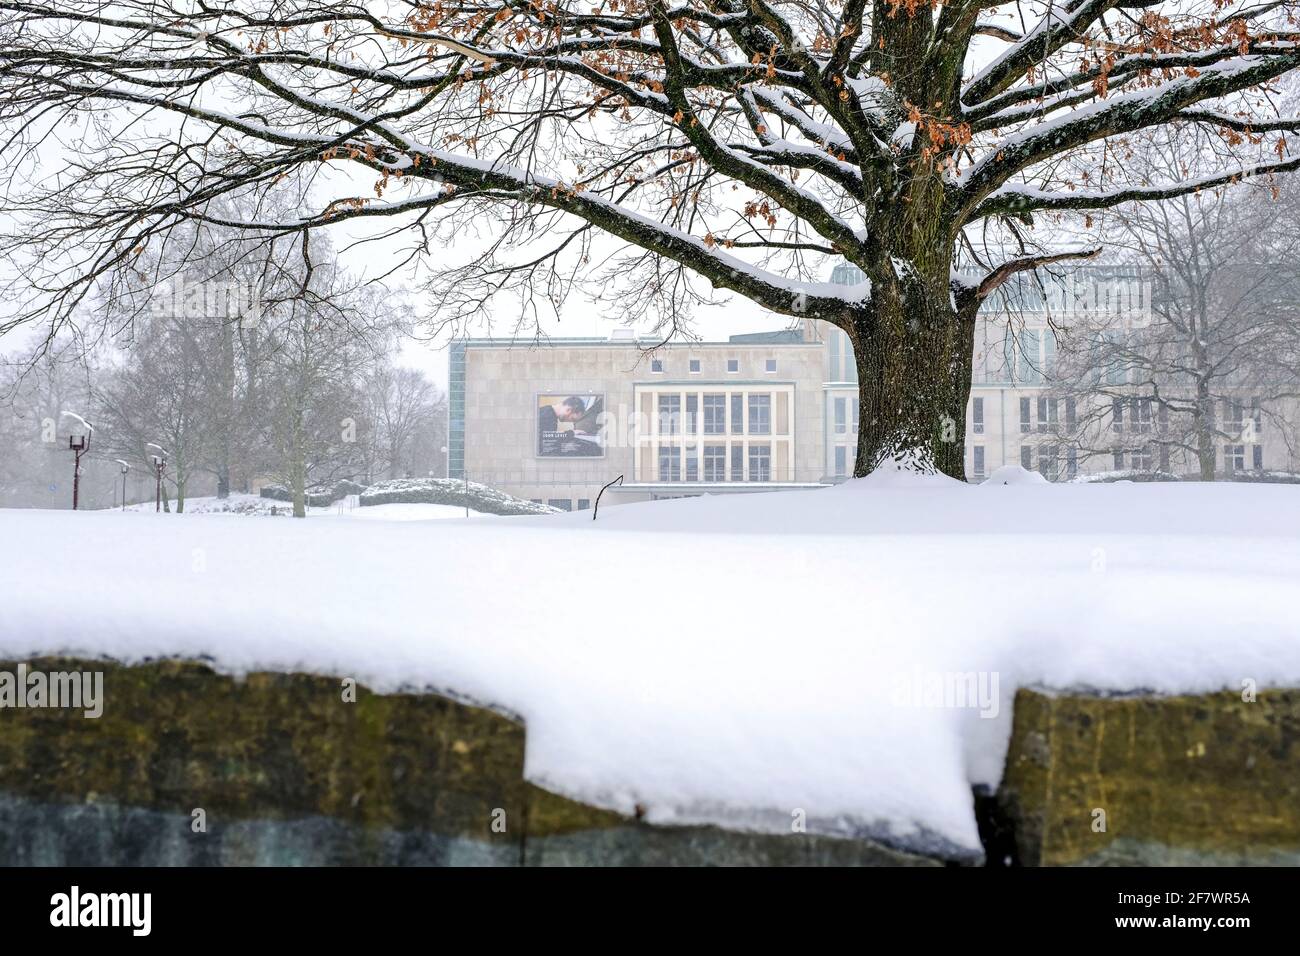 08.02.2021, Essen, Nordrhein-Westfalen, Deutschland - Essener Philharmonie im Schnee Stock Photo